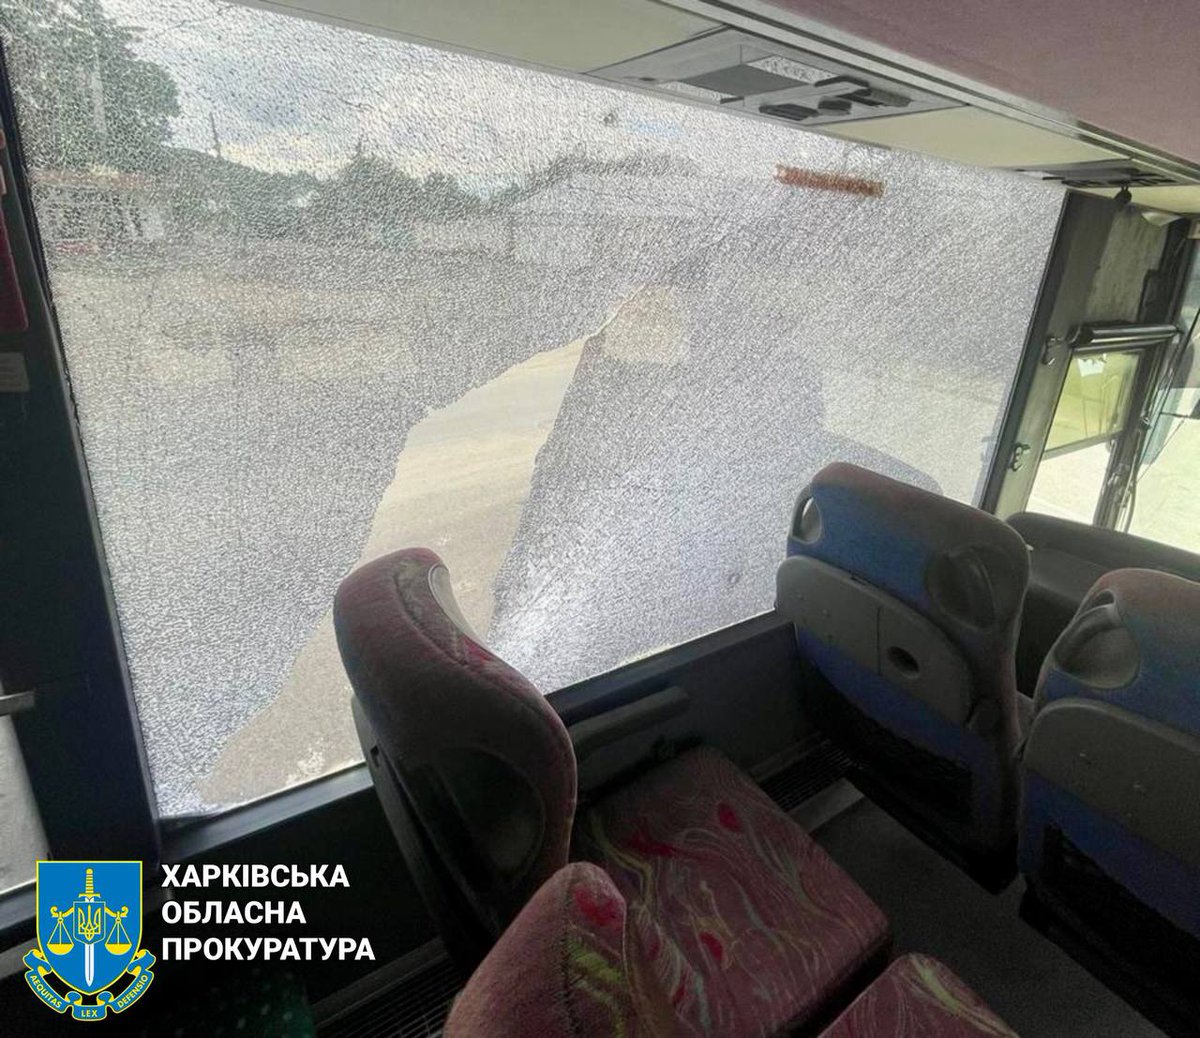 В результате атаки беспилотника вчера в Купянске трое ранены, в том числе двое полицейских